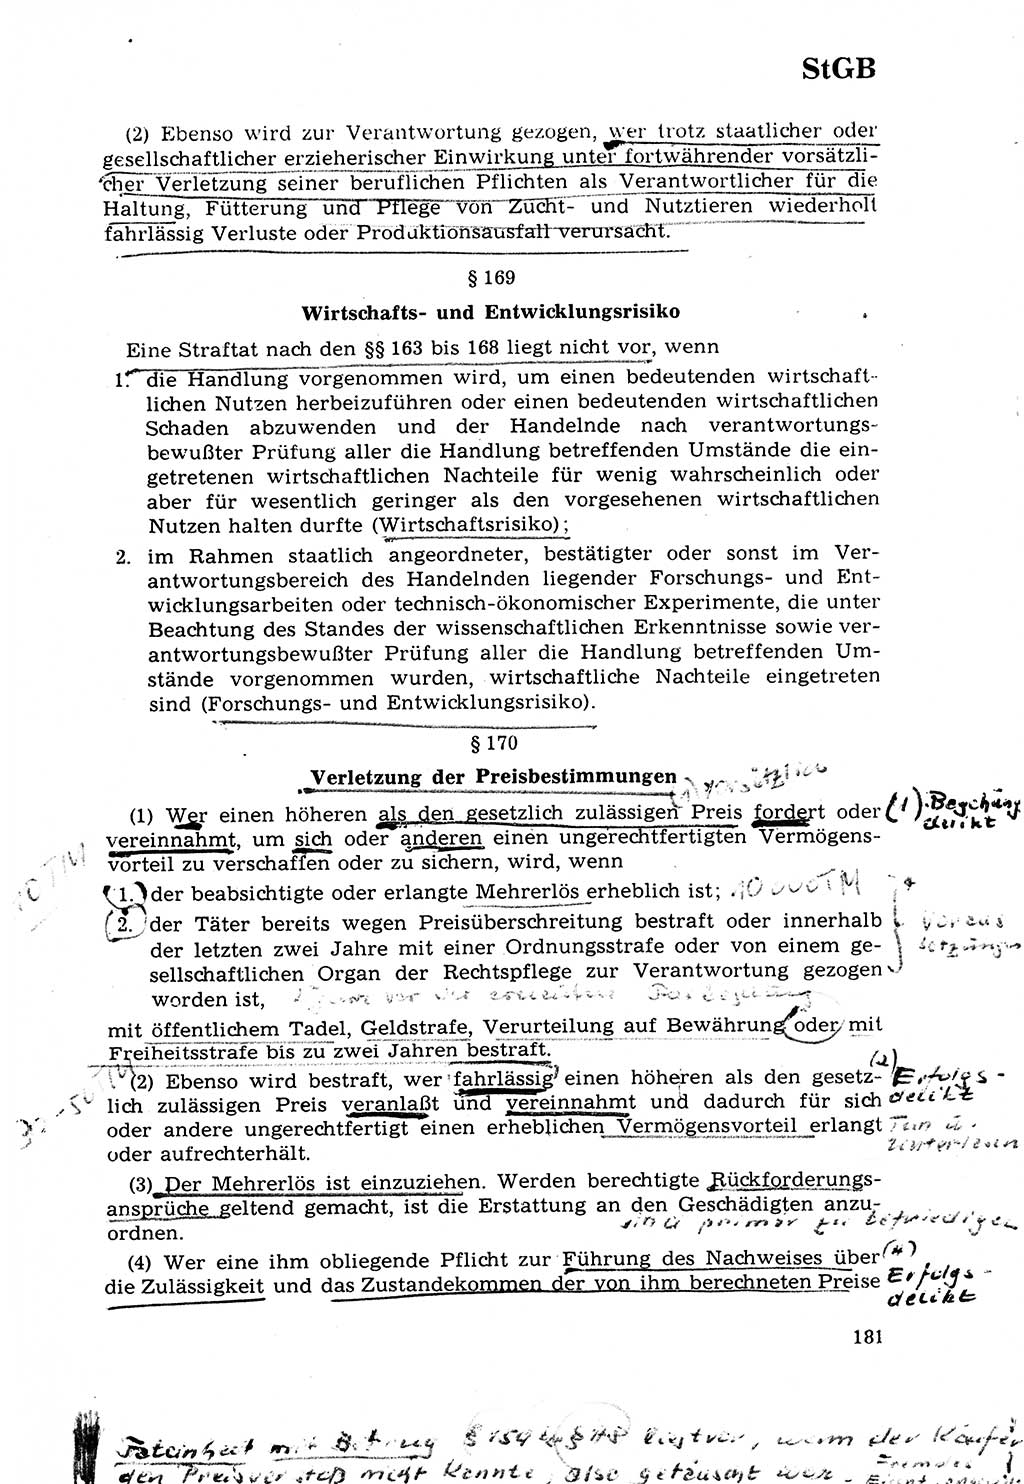 Strafrecht [Deutsche Demokratische Republik (DDR)] 1968, Seite 181 (Strafr. DDR 1968, S. 181)